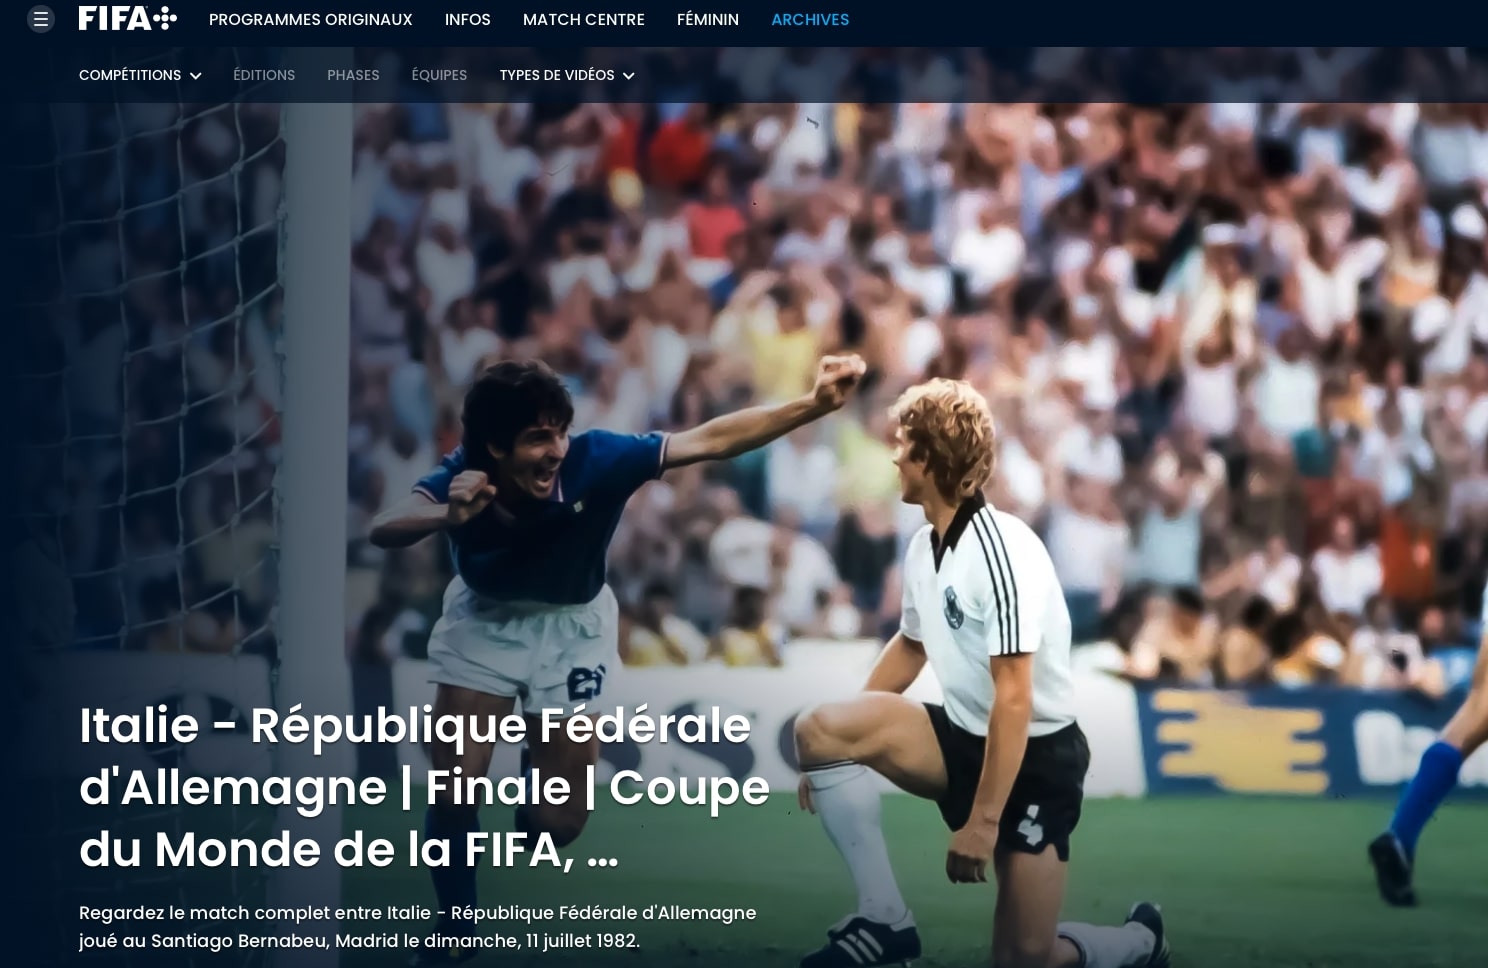 Archive proposée par FIFA+